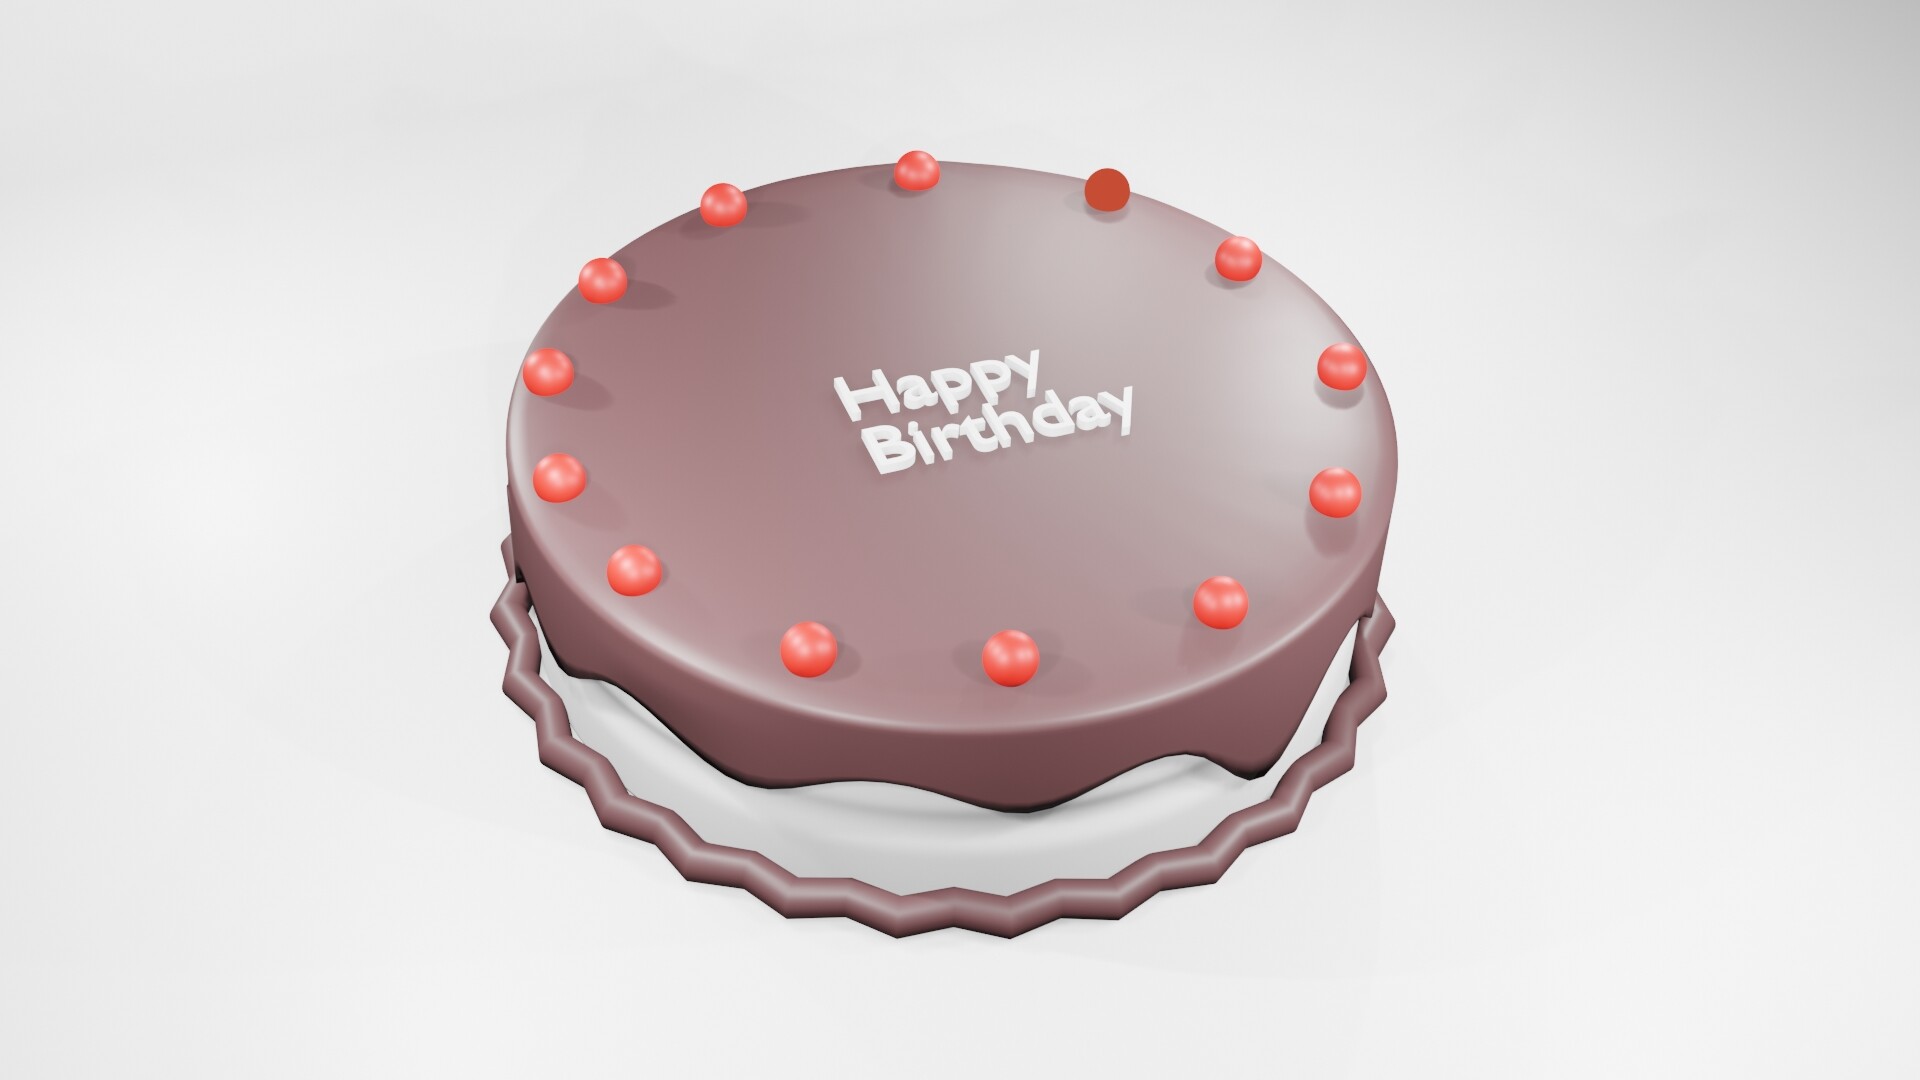 ArtStation - Cake 3D Model